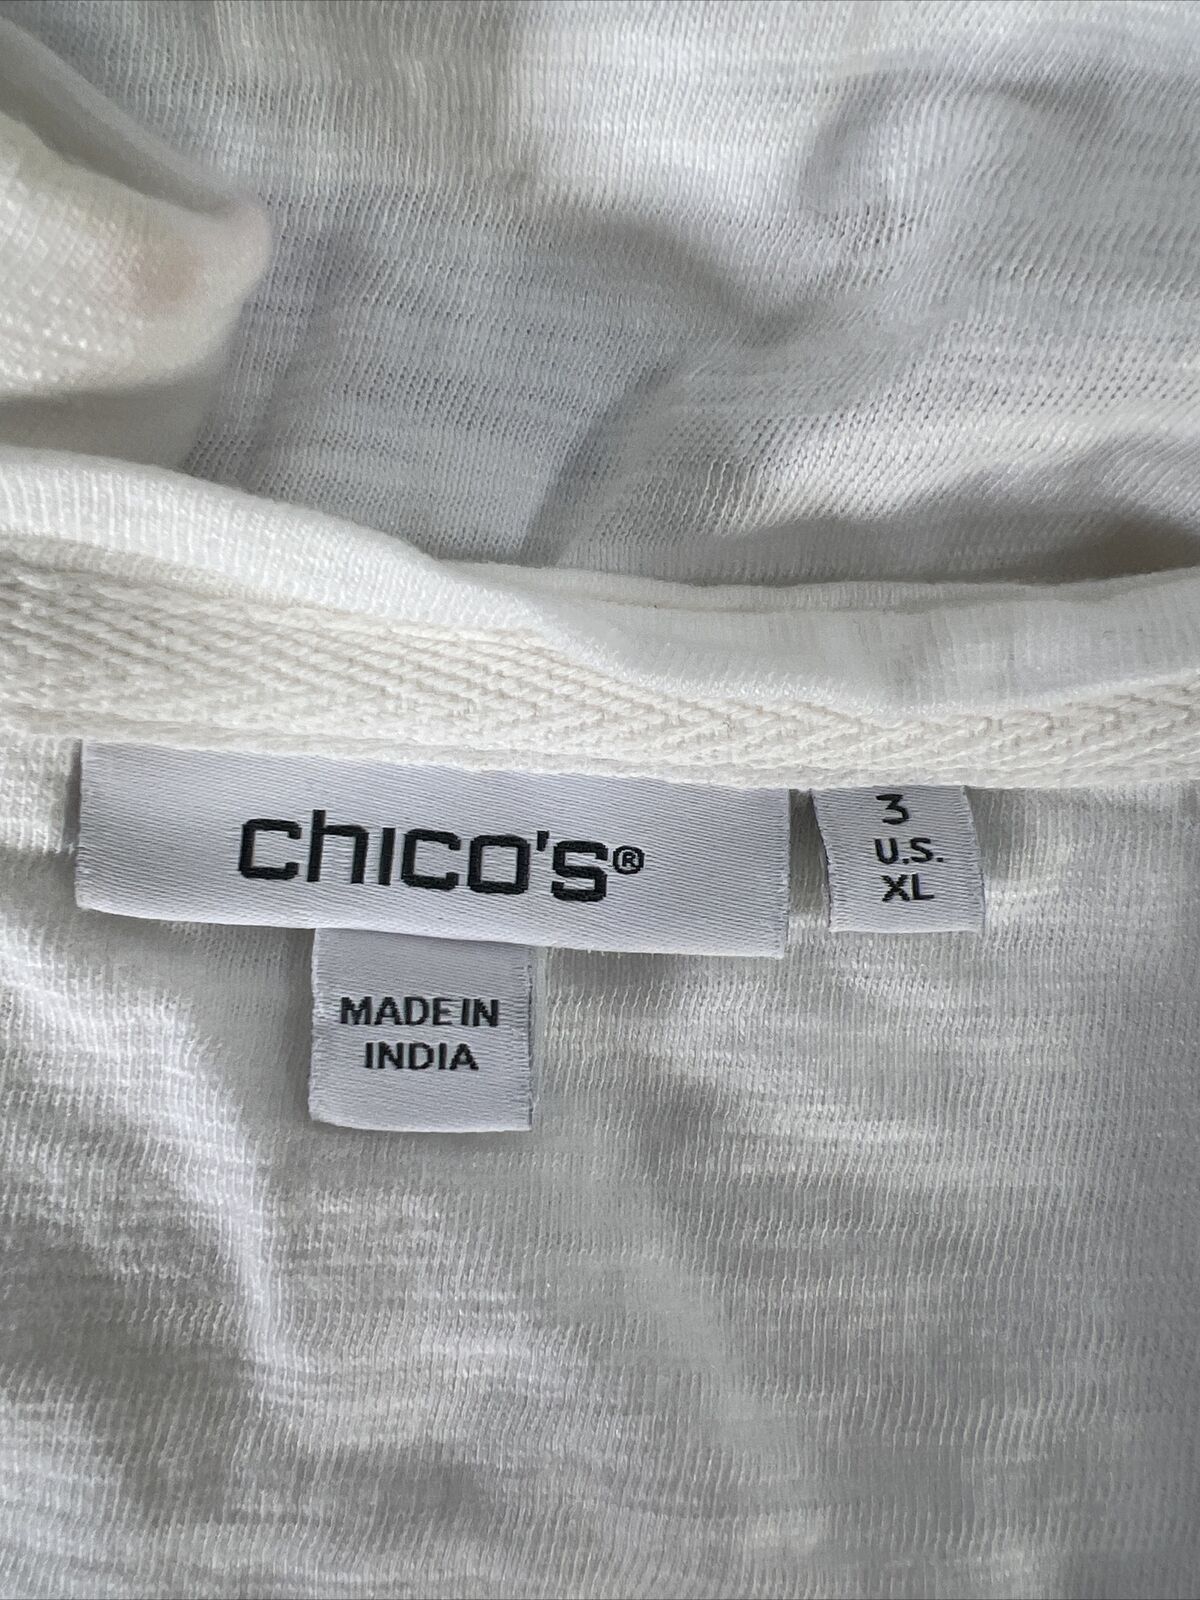 Chico's Women's White Tropical Print V-Neck T-Shirt - 3/US XL